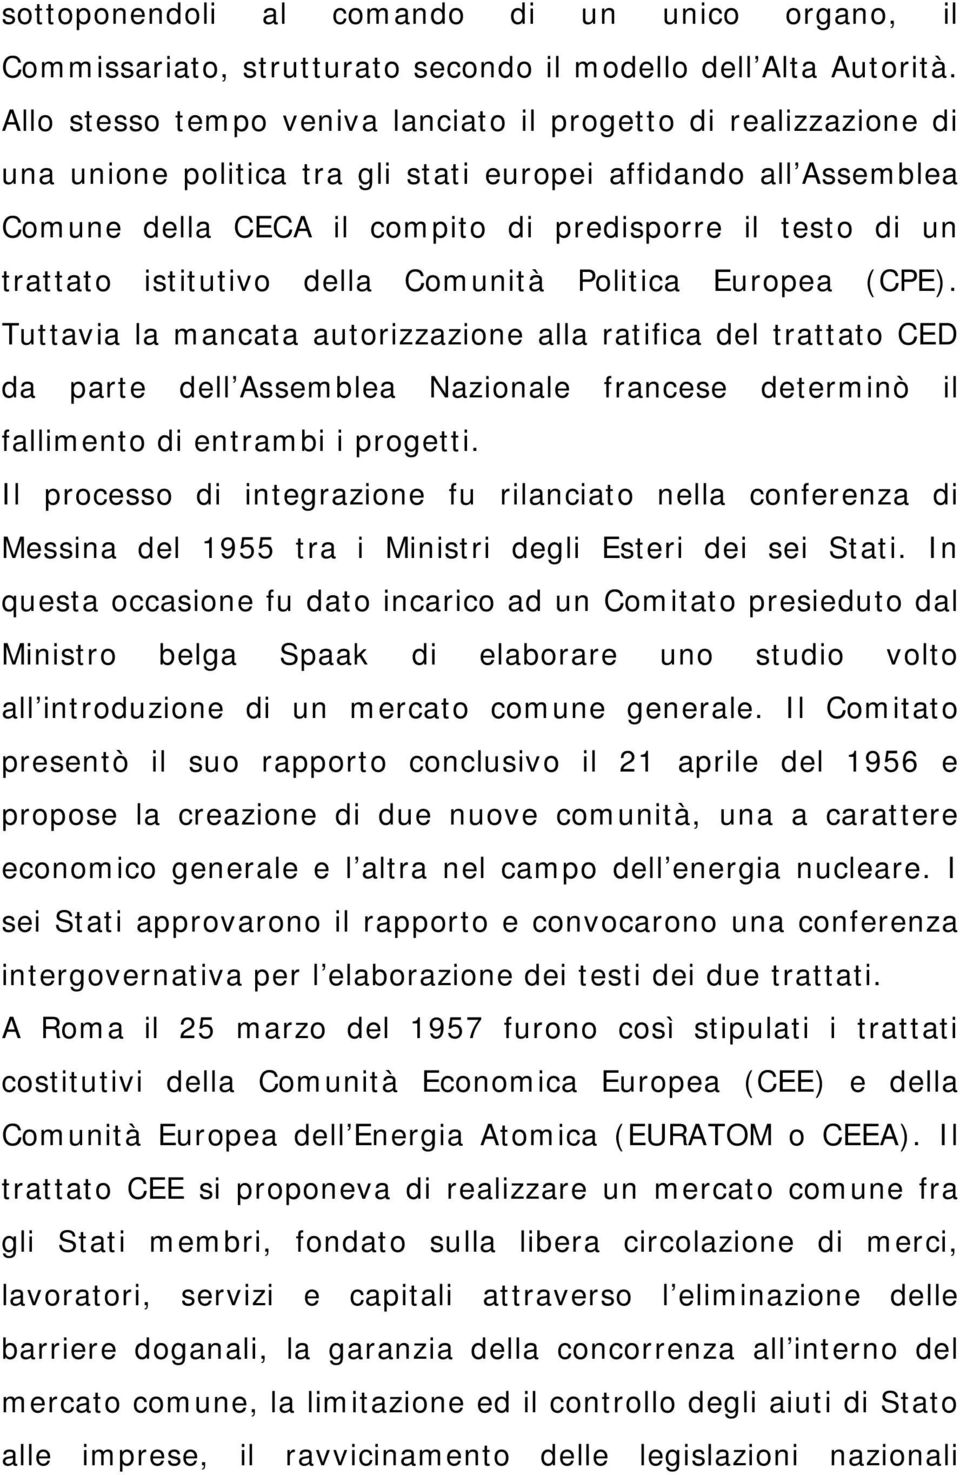 istitutivo della Comunità Politica Europea (CPE).